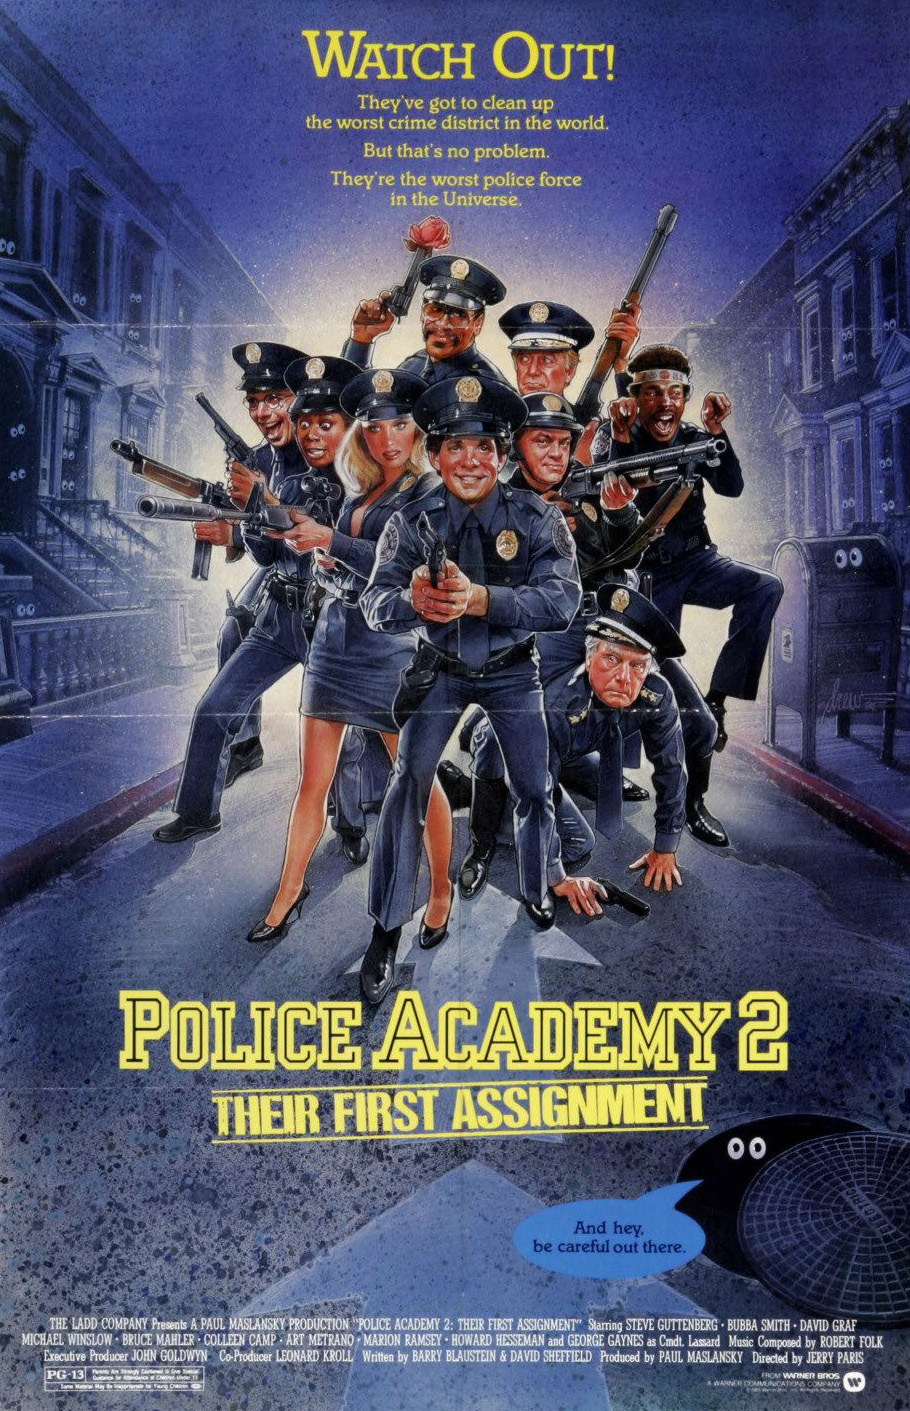 Police Academy 2: Their First Assignment (1985) โปลิศจิตไม่ว่าง 2 Steve Guttenberg